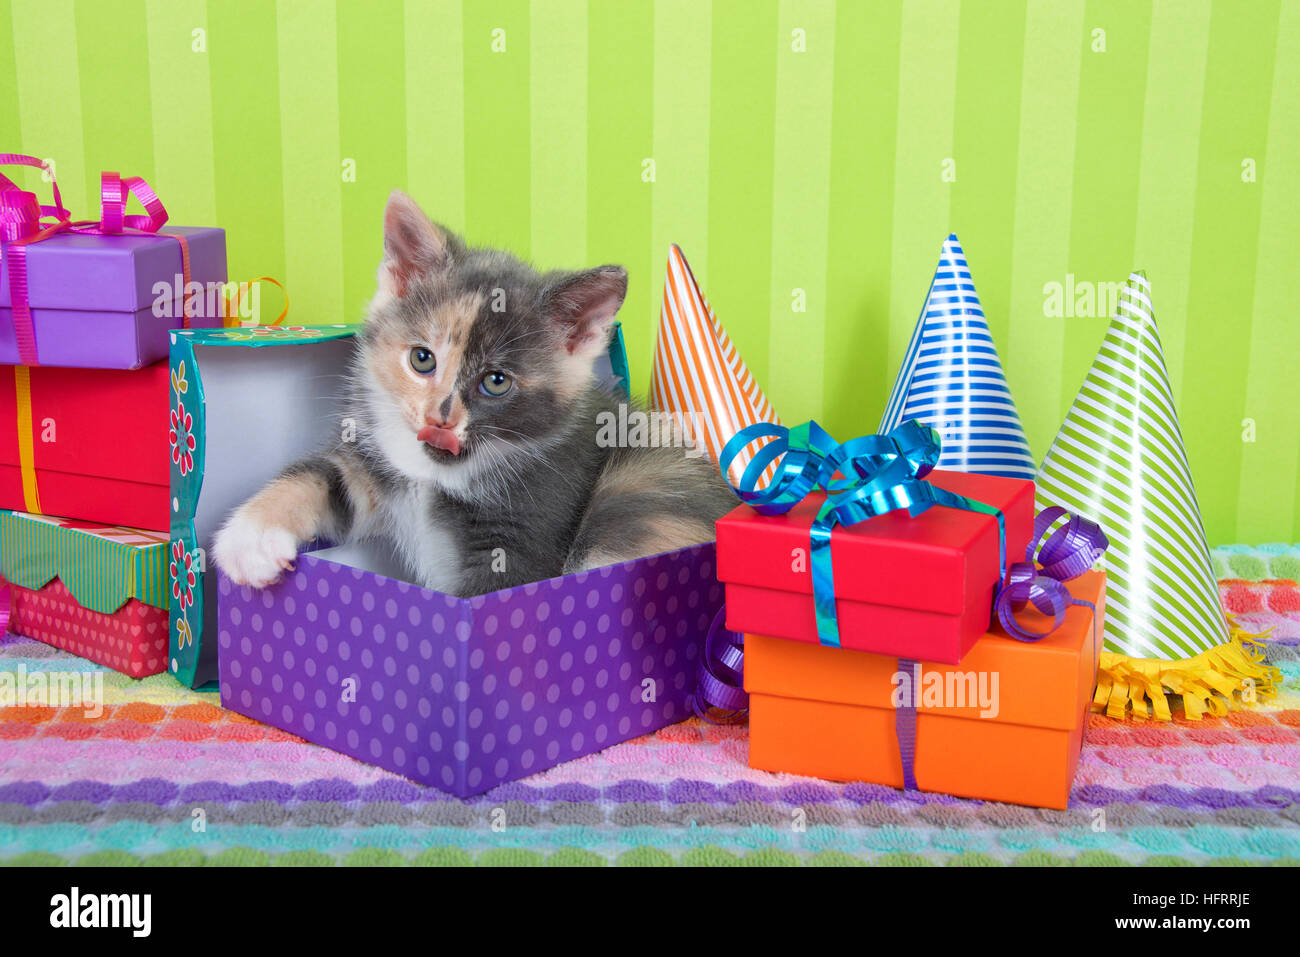 Di due mesi di età calico tabby gattino che spuntavano di regalo di compleanno in una pila di luminose di caselle colorate con party cappelli, verde brillante backgroun strippato Foto Stock